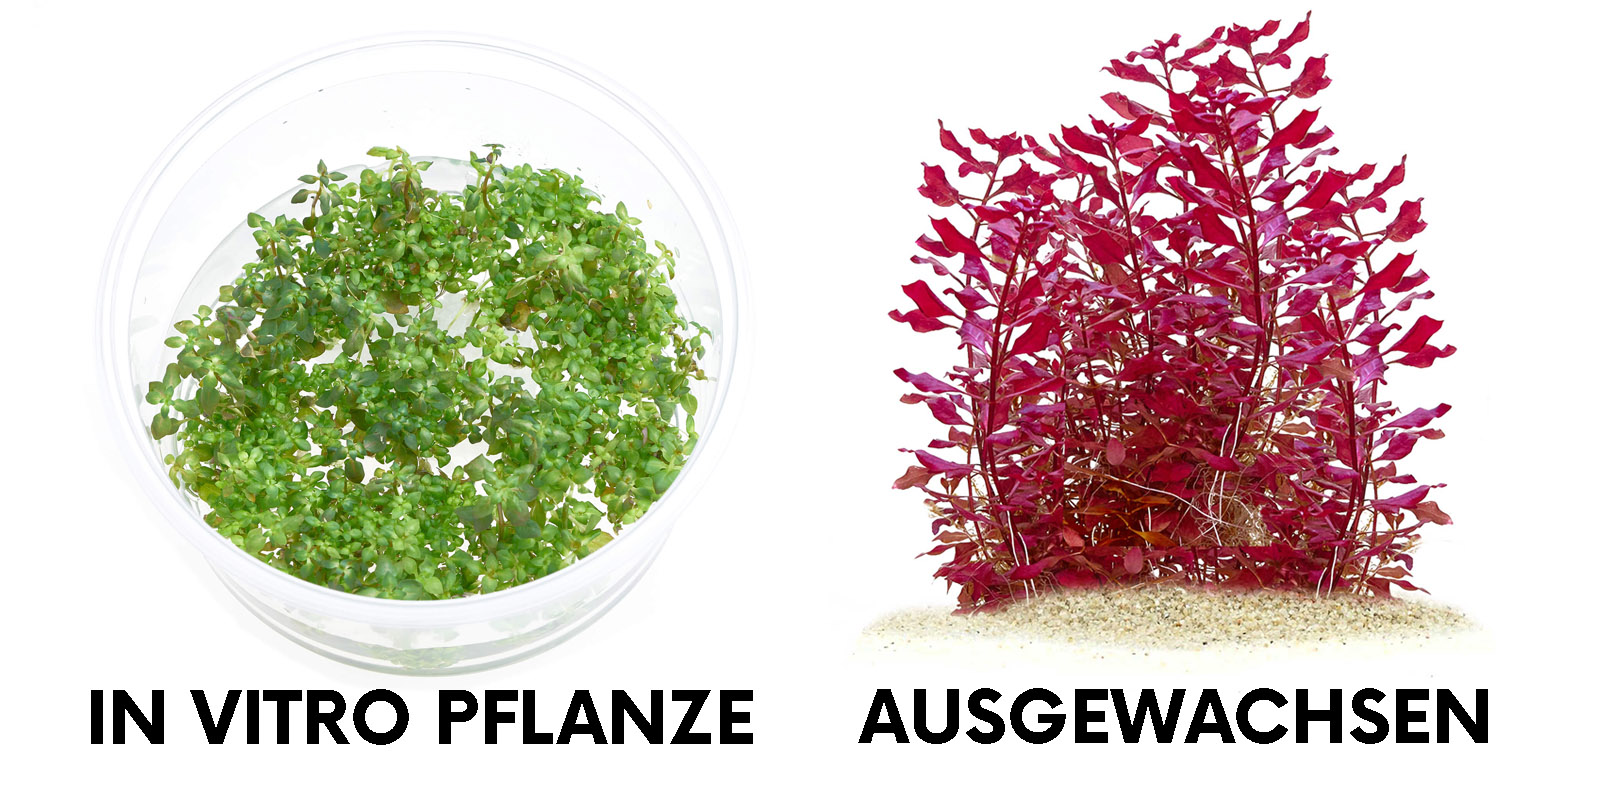 Ludwigia palustris super red in vitro und ausgewachsen Vergleich